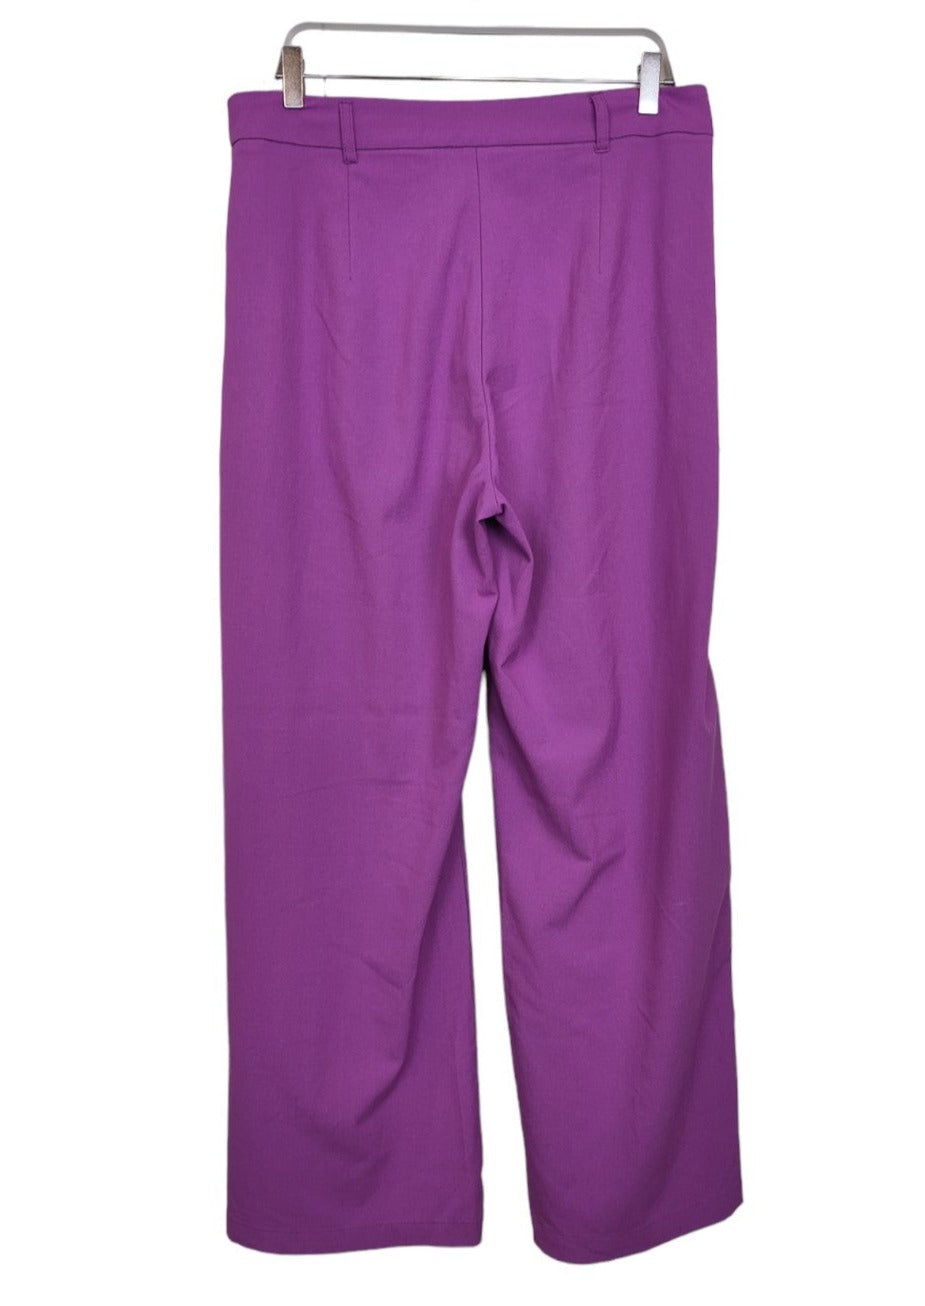 Γυναικεία Παντελόνα BERSHKA σε Βιολετί Χρώμα (Large)